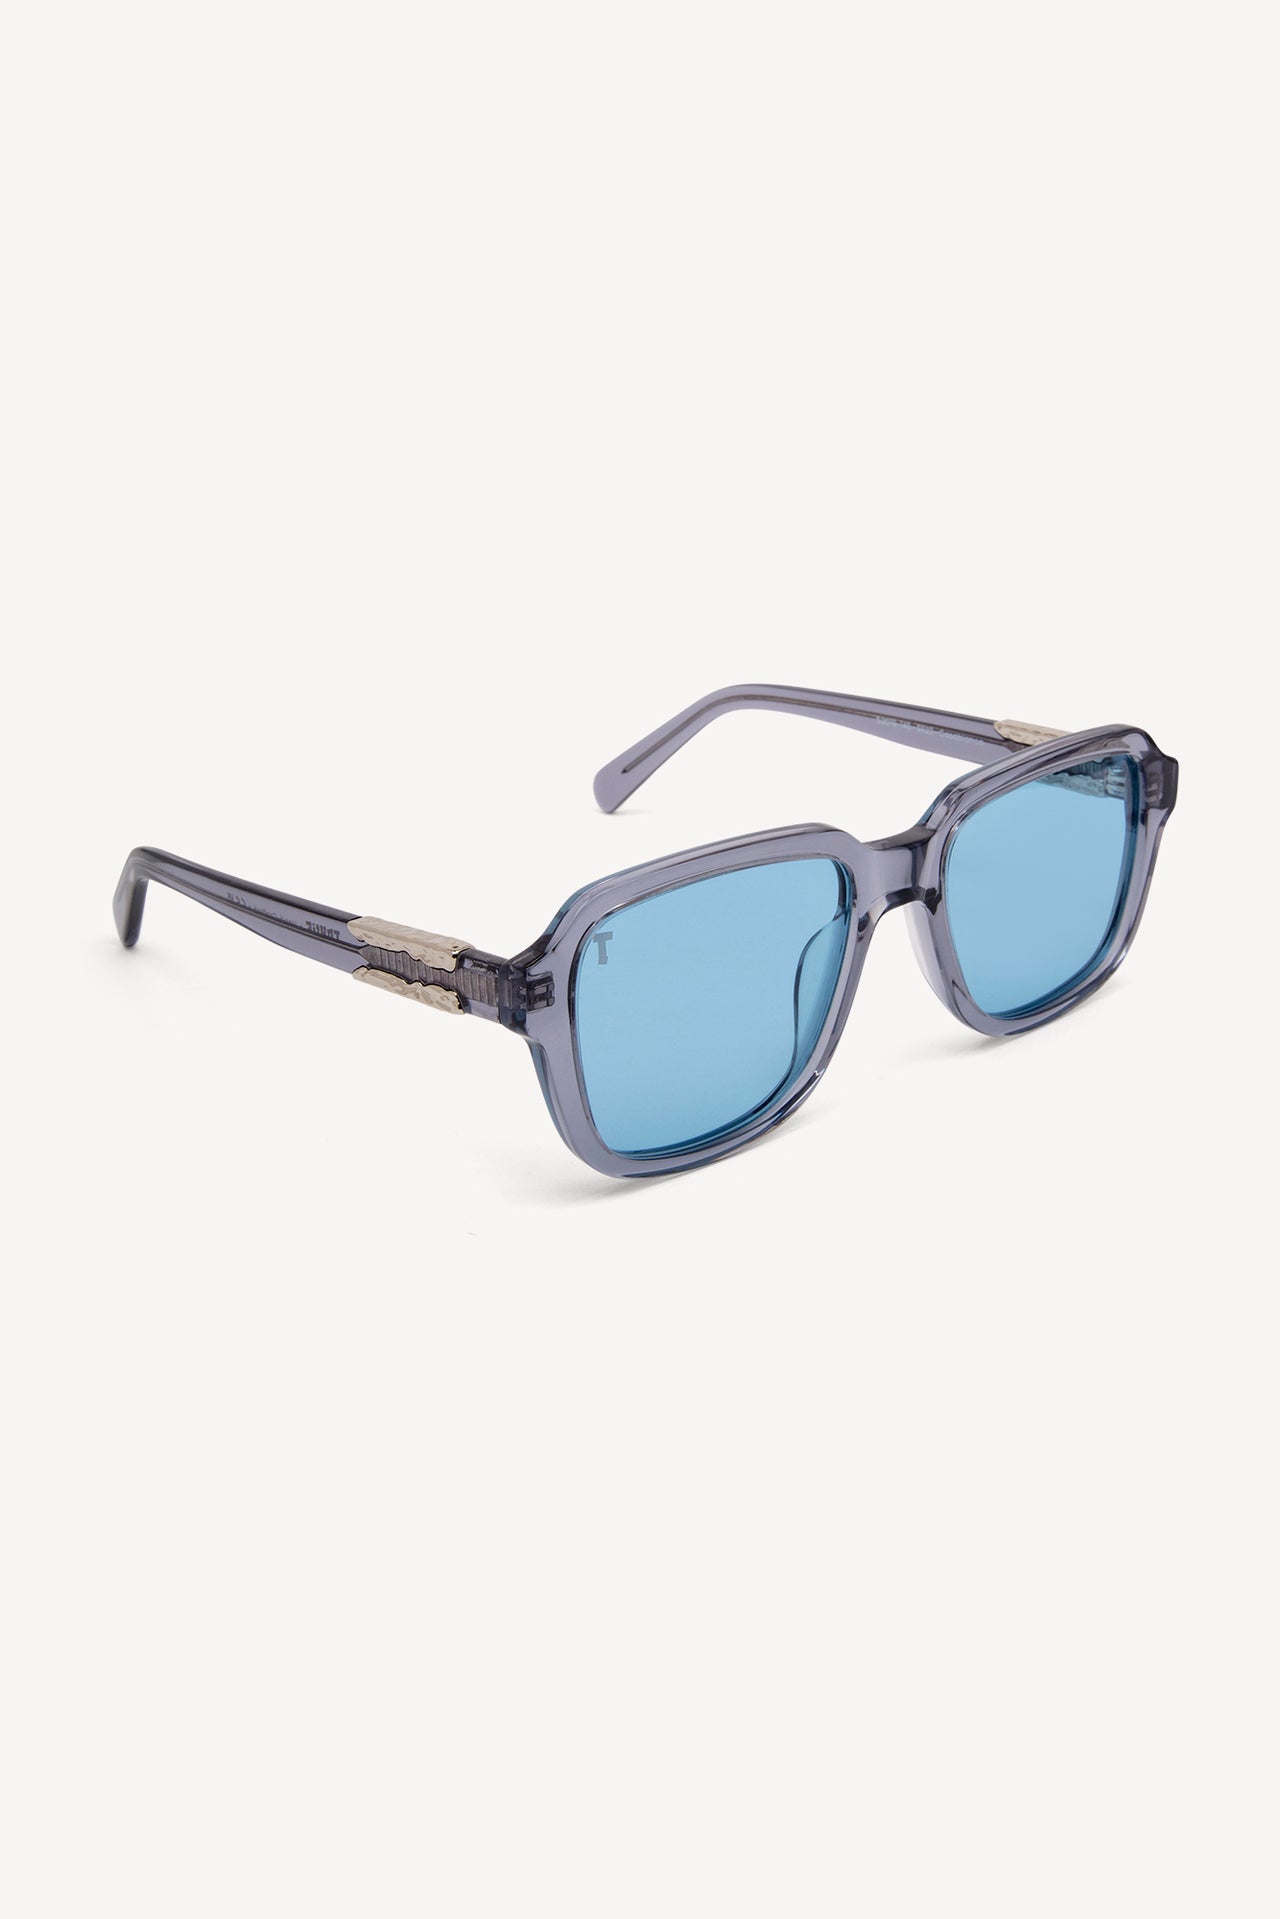 TOATIE Casablanca Square Sunglasses GREY/BLUE